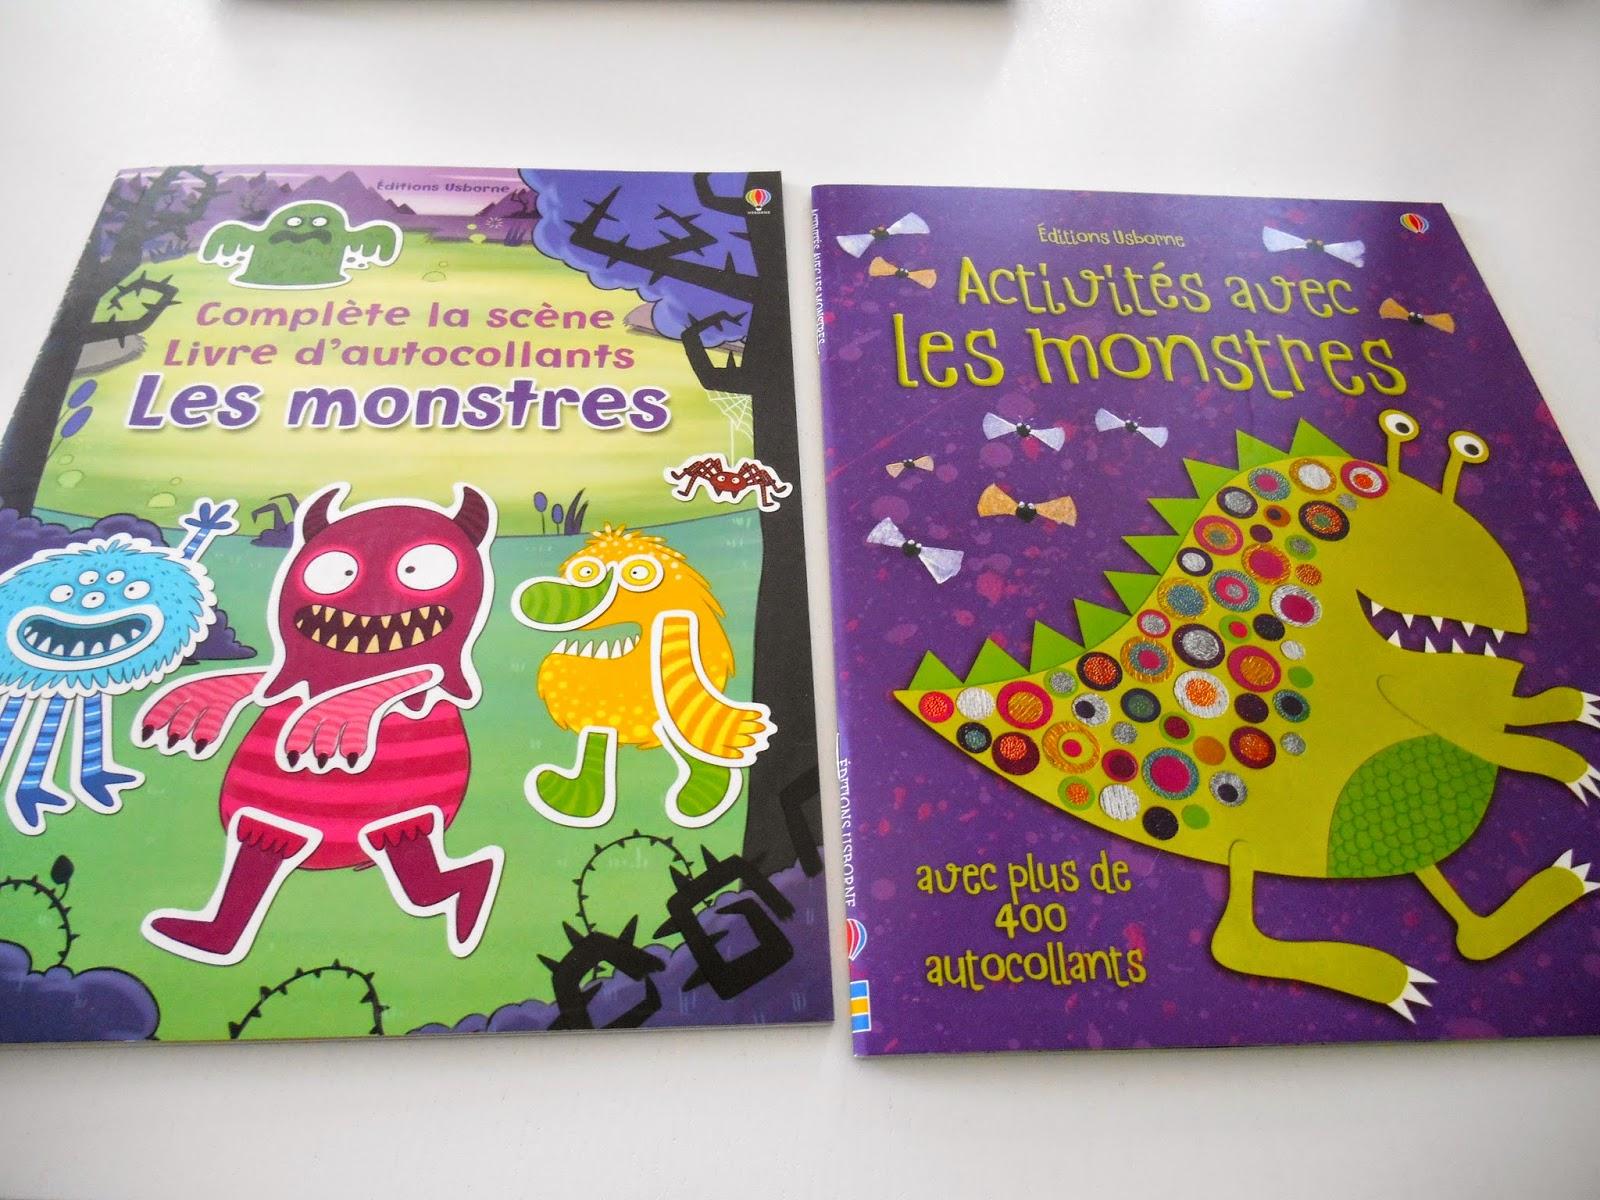 Halloween : on dessine, on colle, on colorie! #5 : Activités avec les monstres - Complète la scène Les monstres